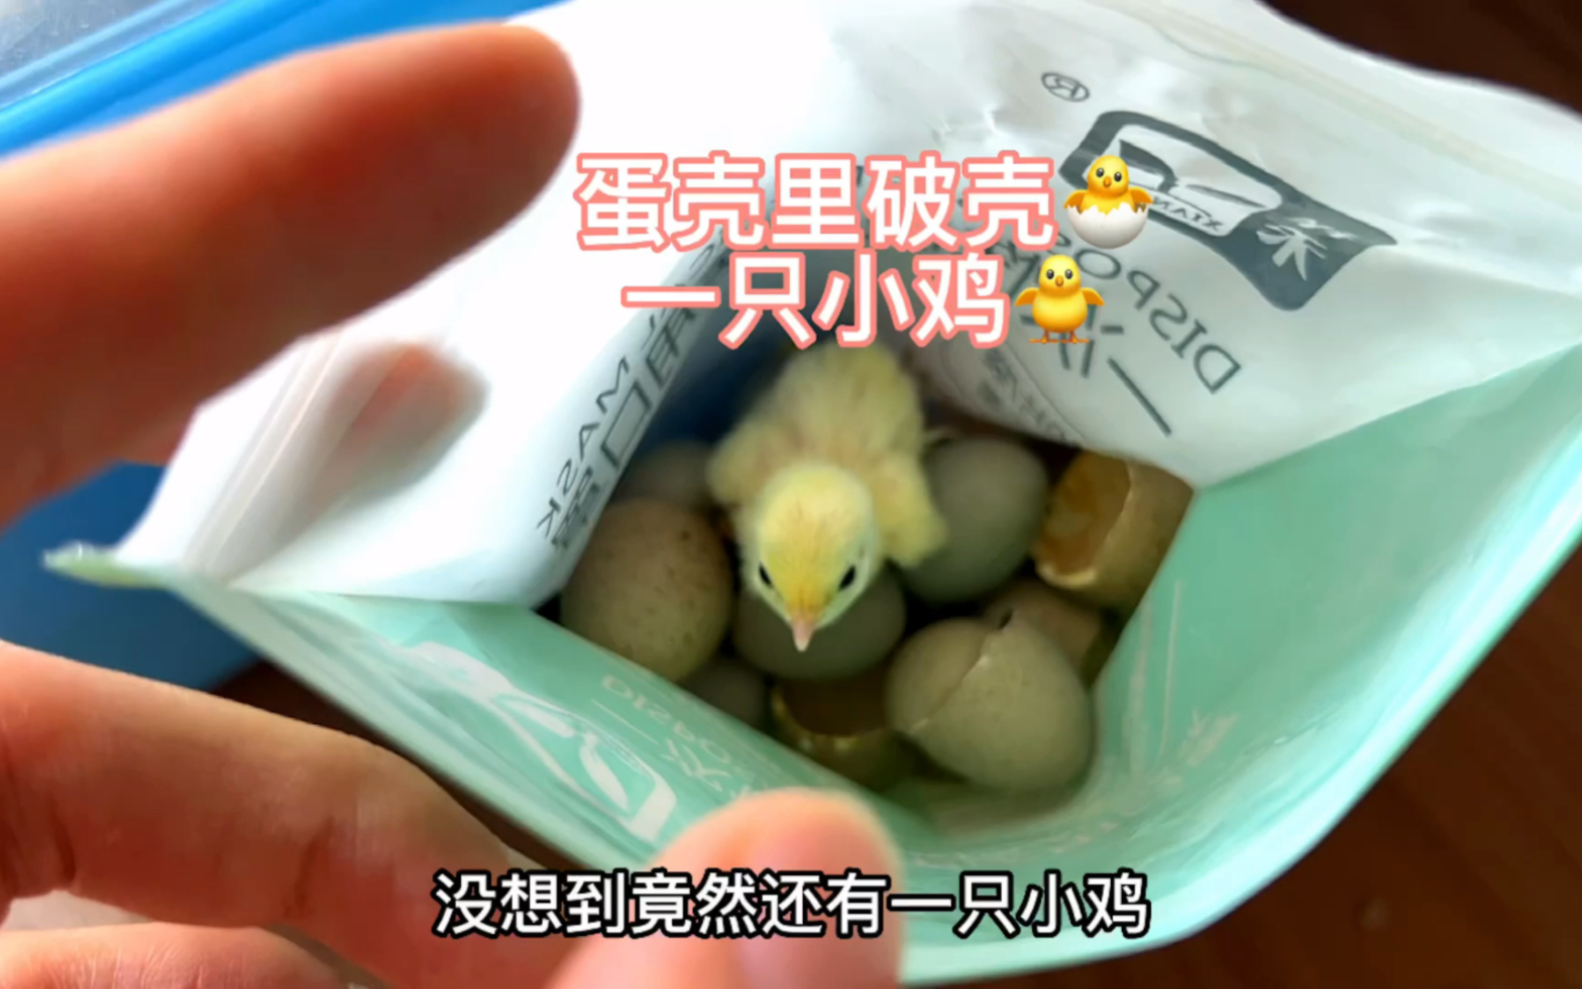 在一堆蛋壳中，发现了一只小鸡